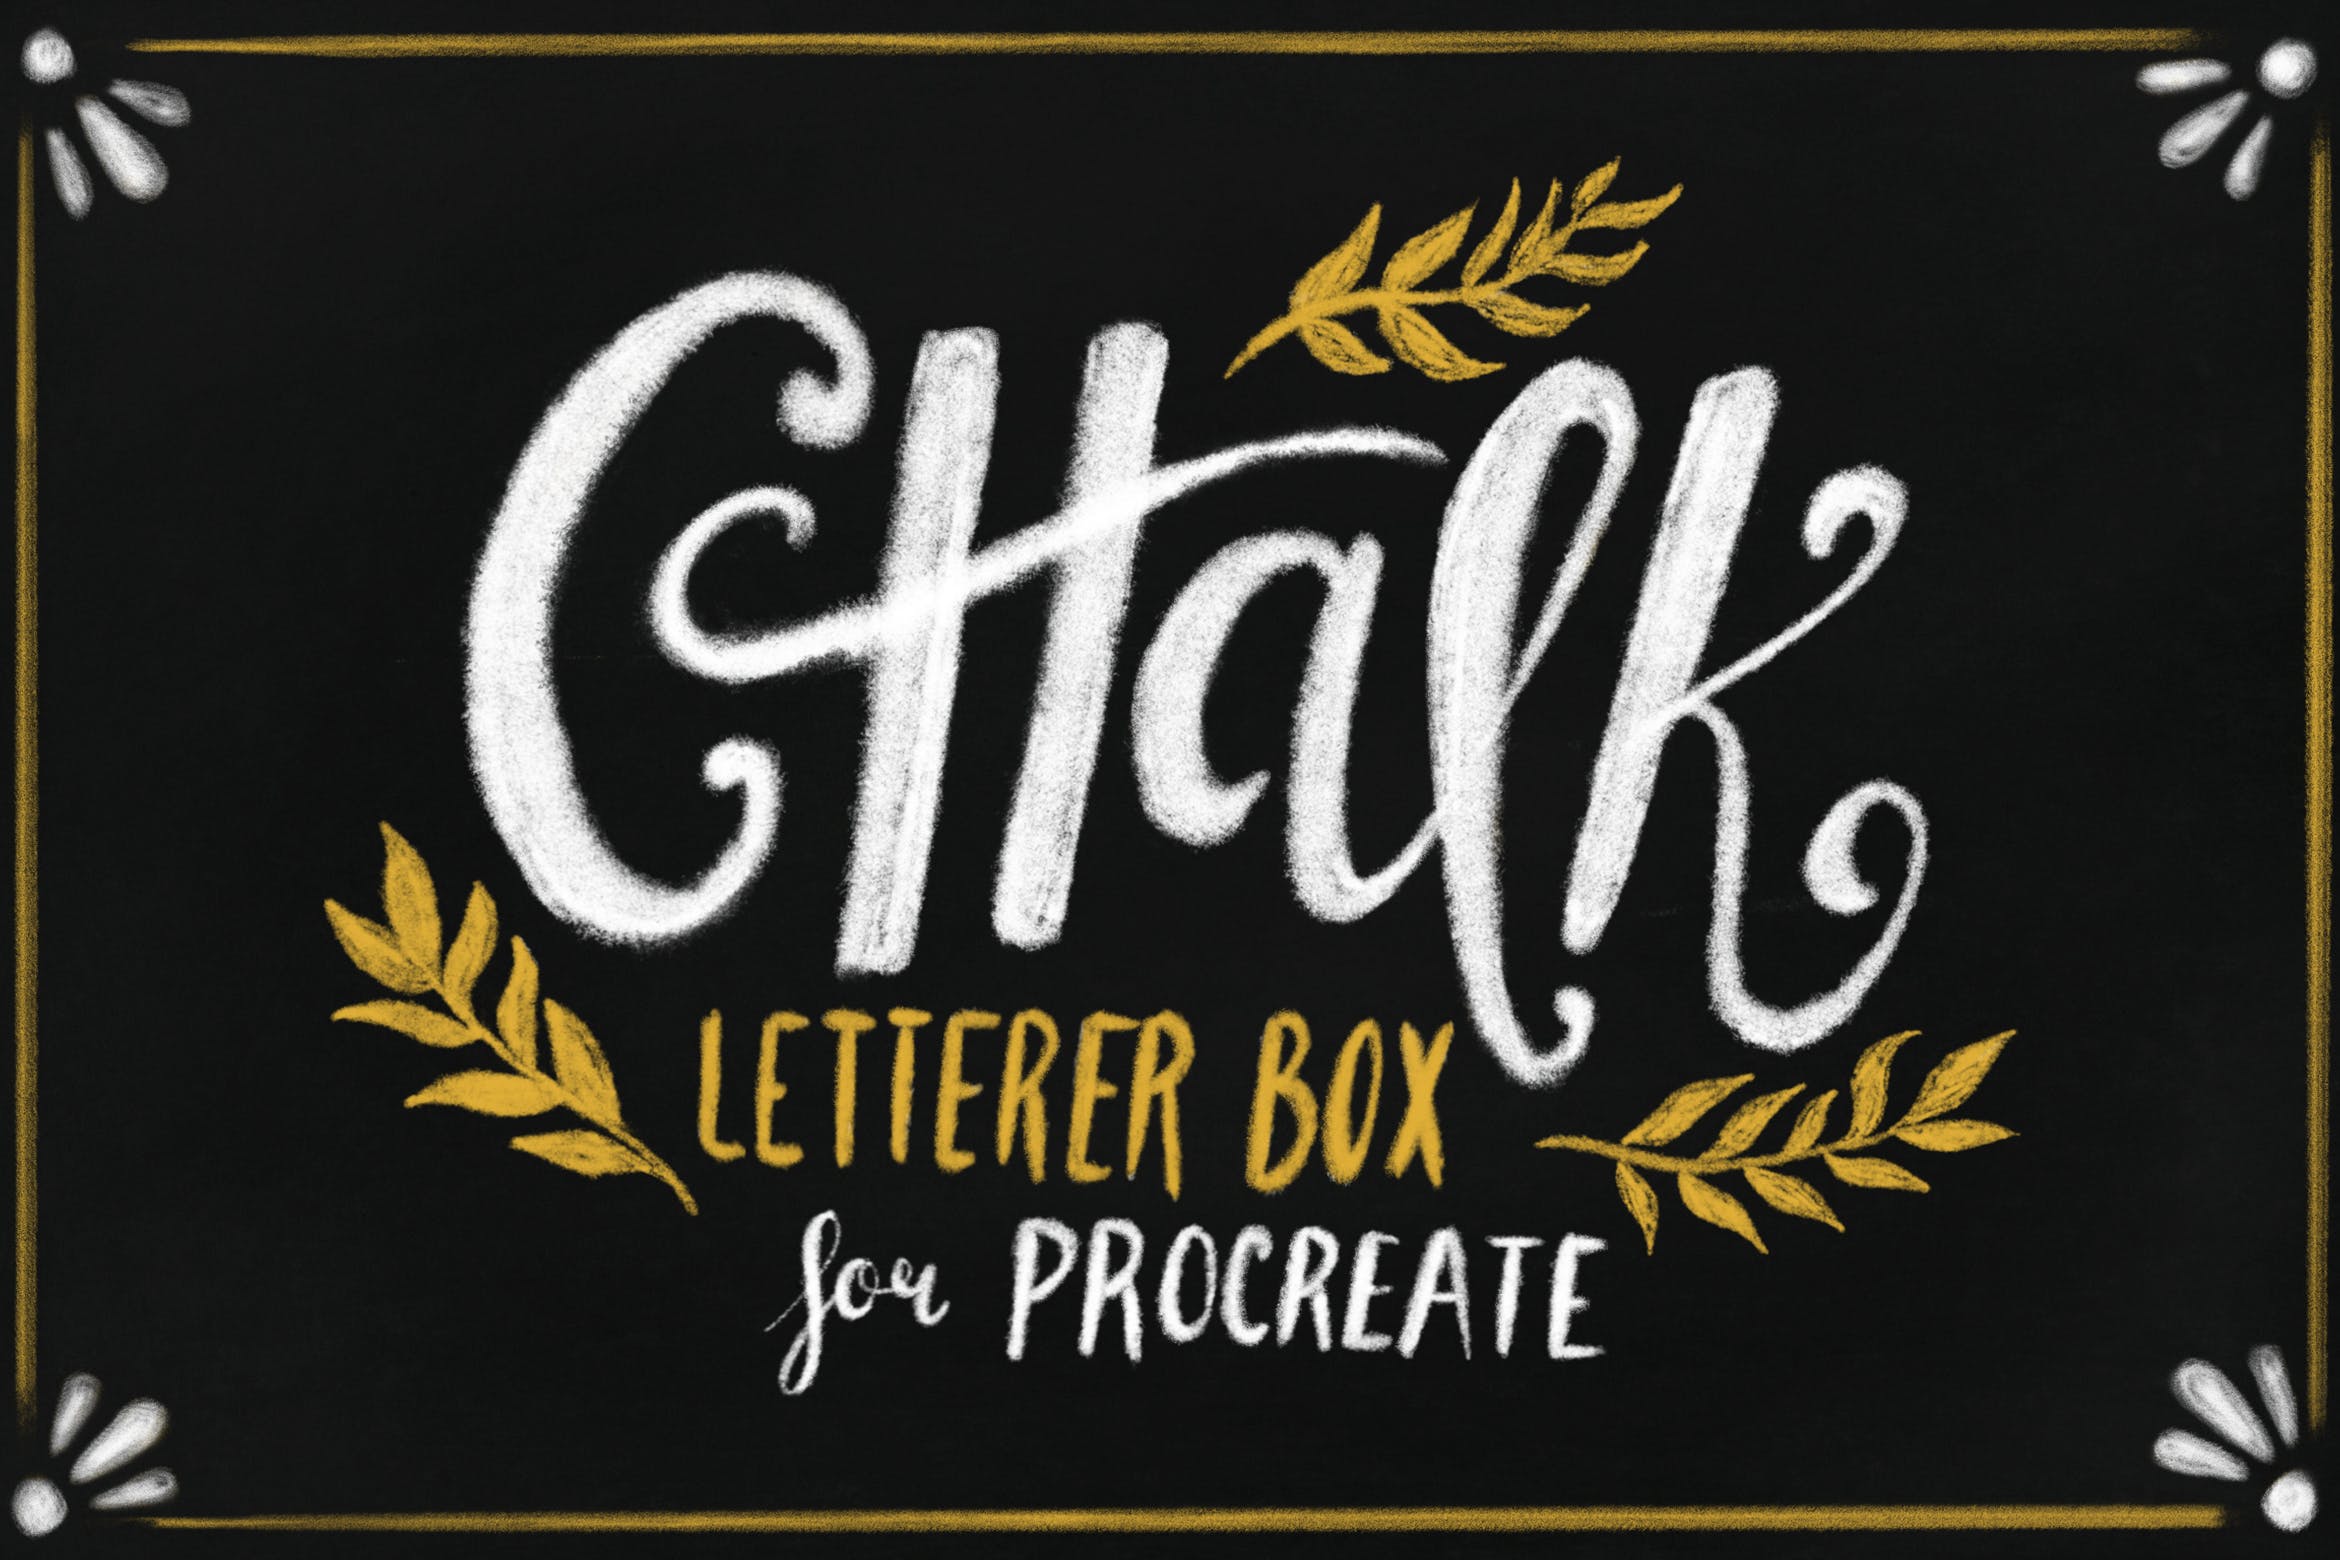 高品质字母/绘图粉笔画风格Procreate笔刷 Chalk Letterer Box for Procreate插图